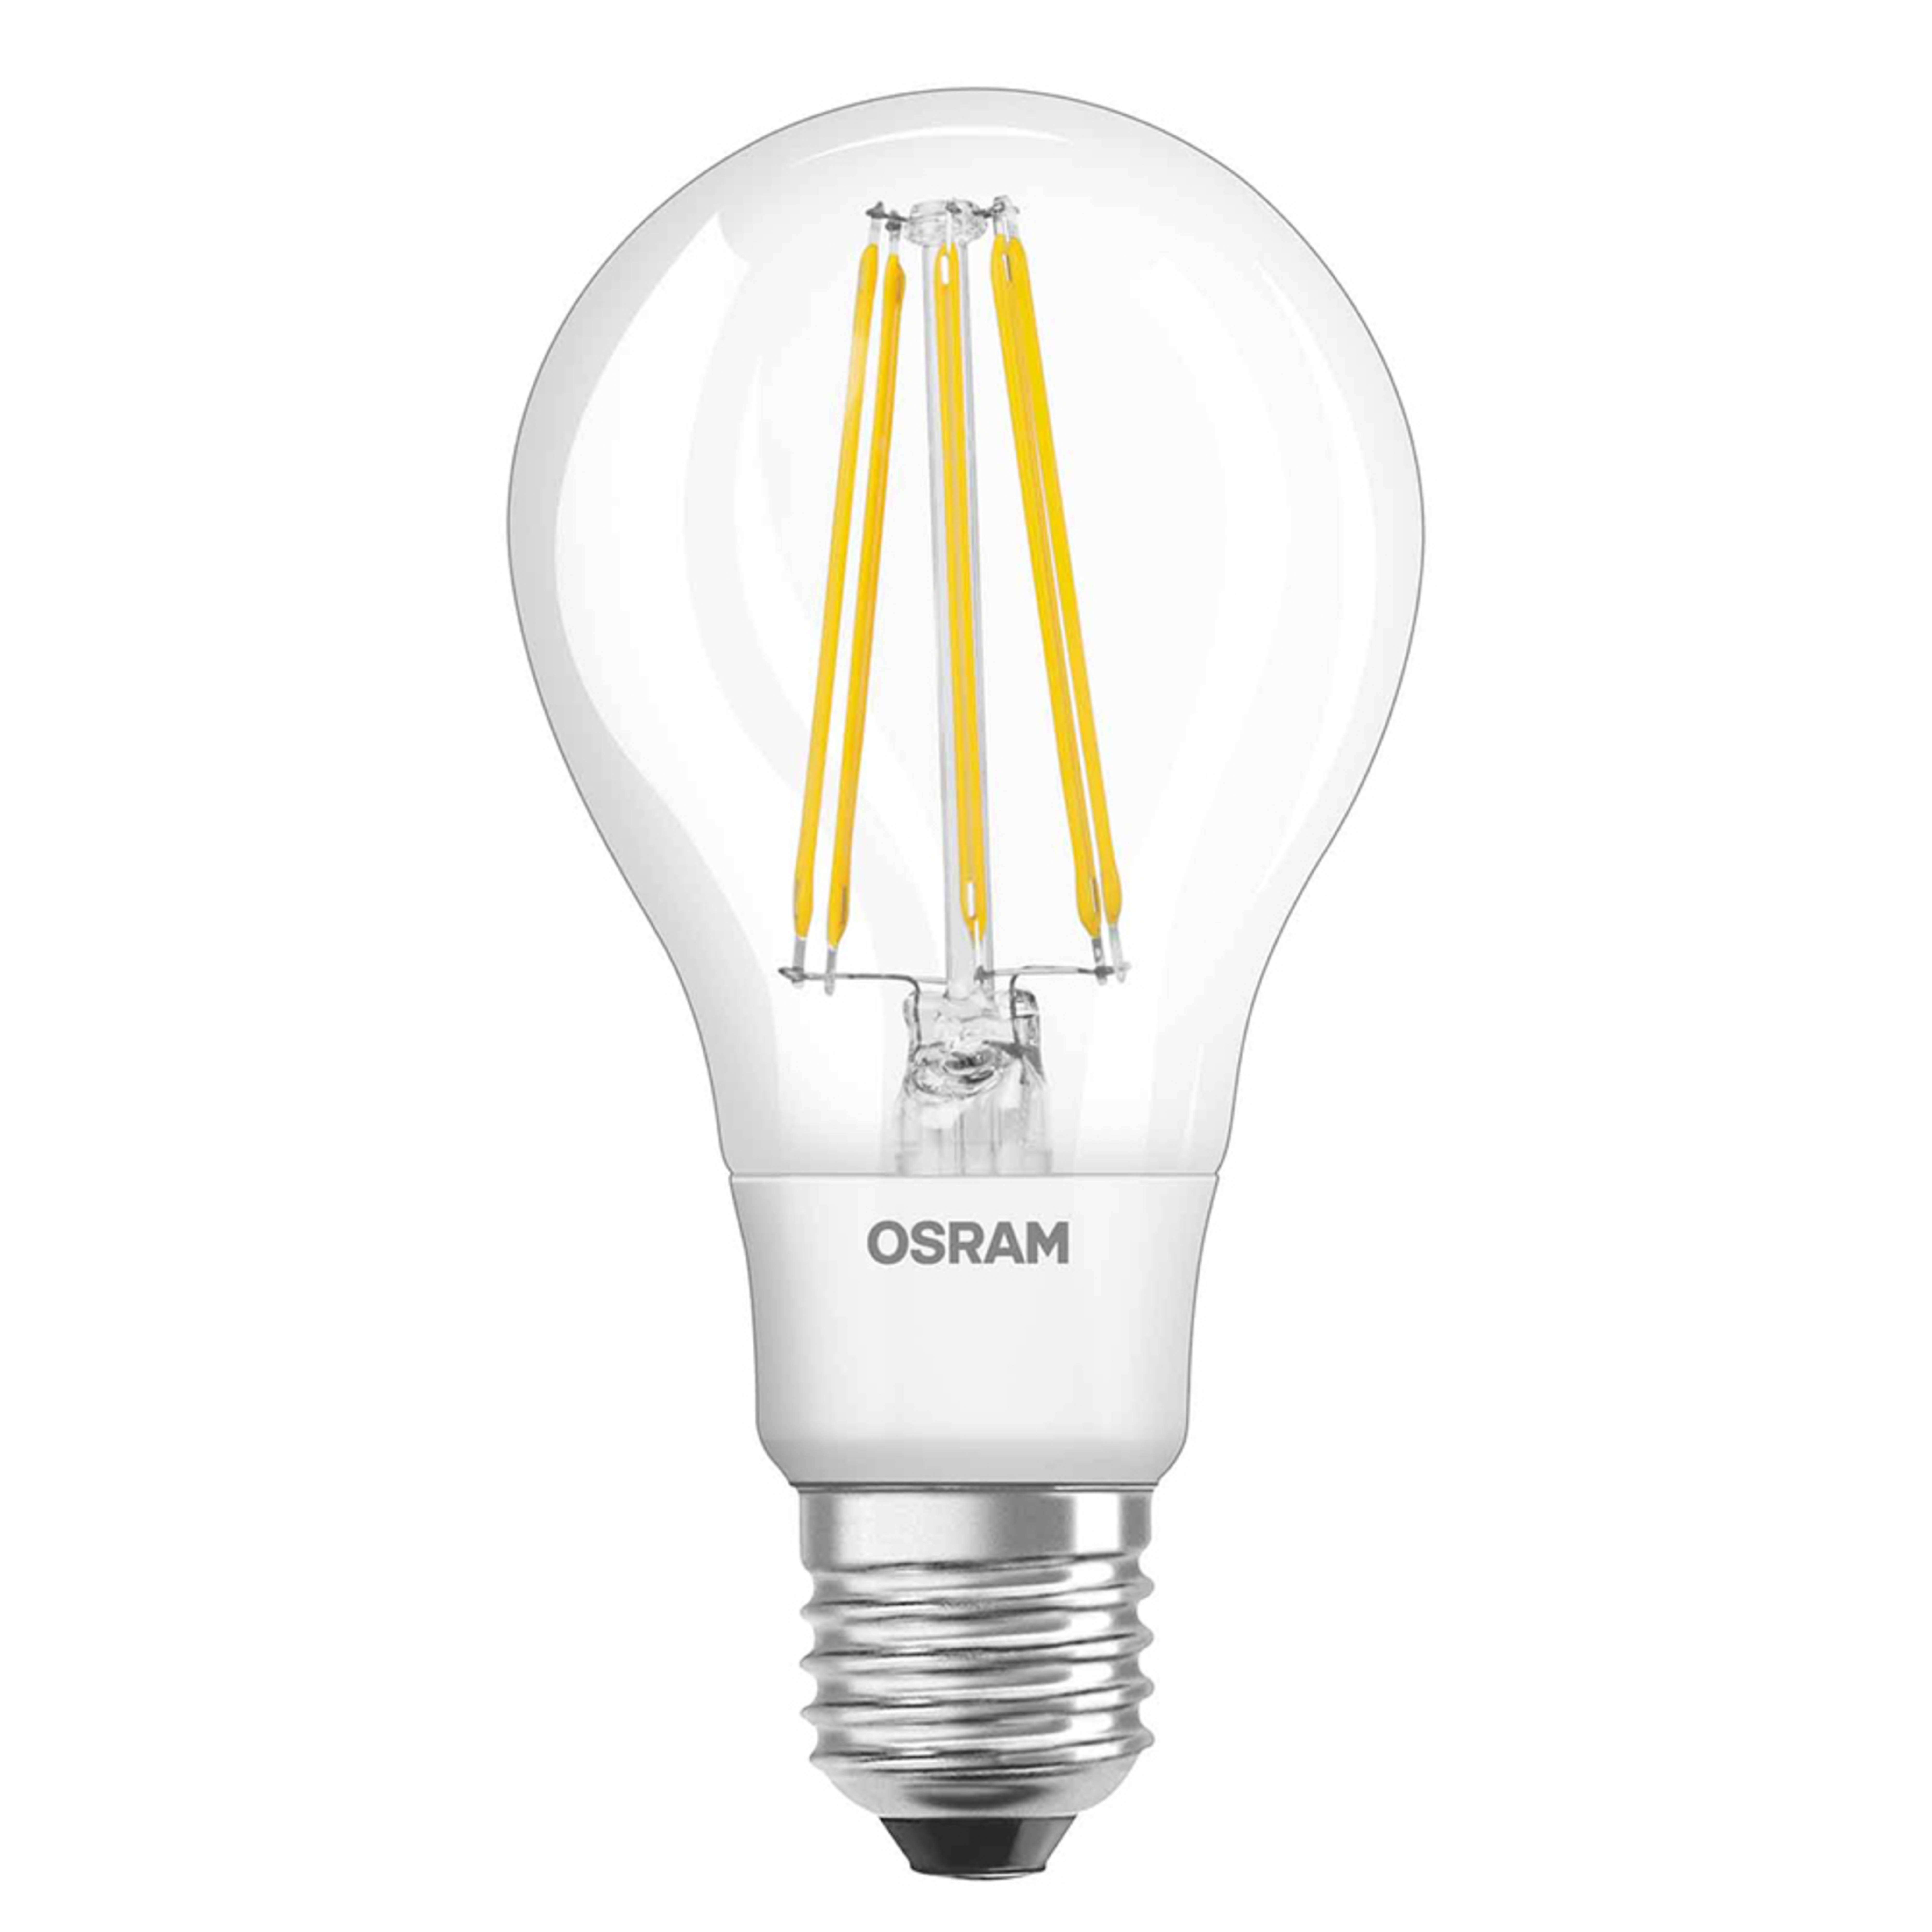 OSRAM LED-Lampe E27 11W 827 Filament